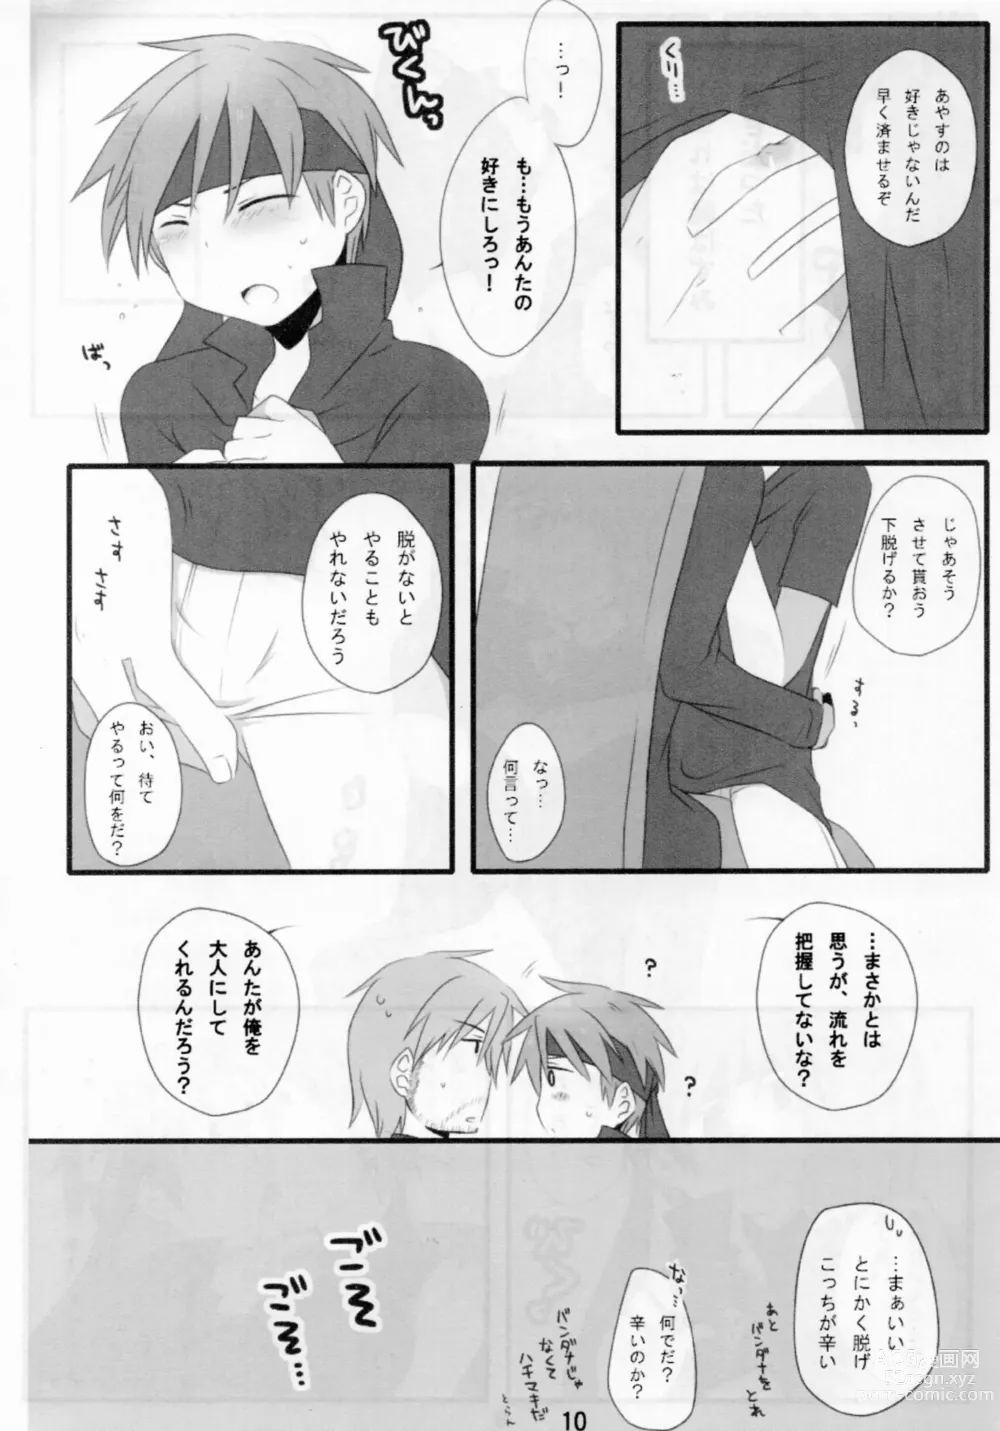 Page 9 of doujinshi Otona Kodomo